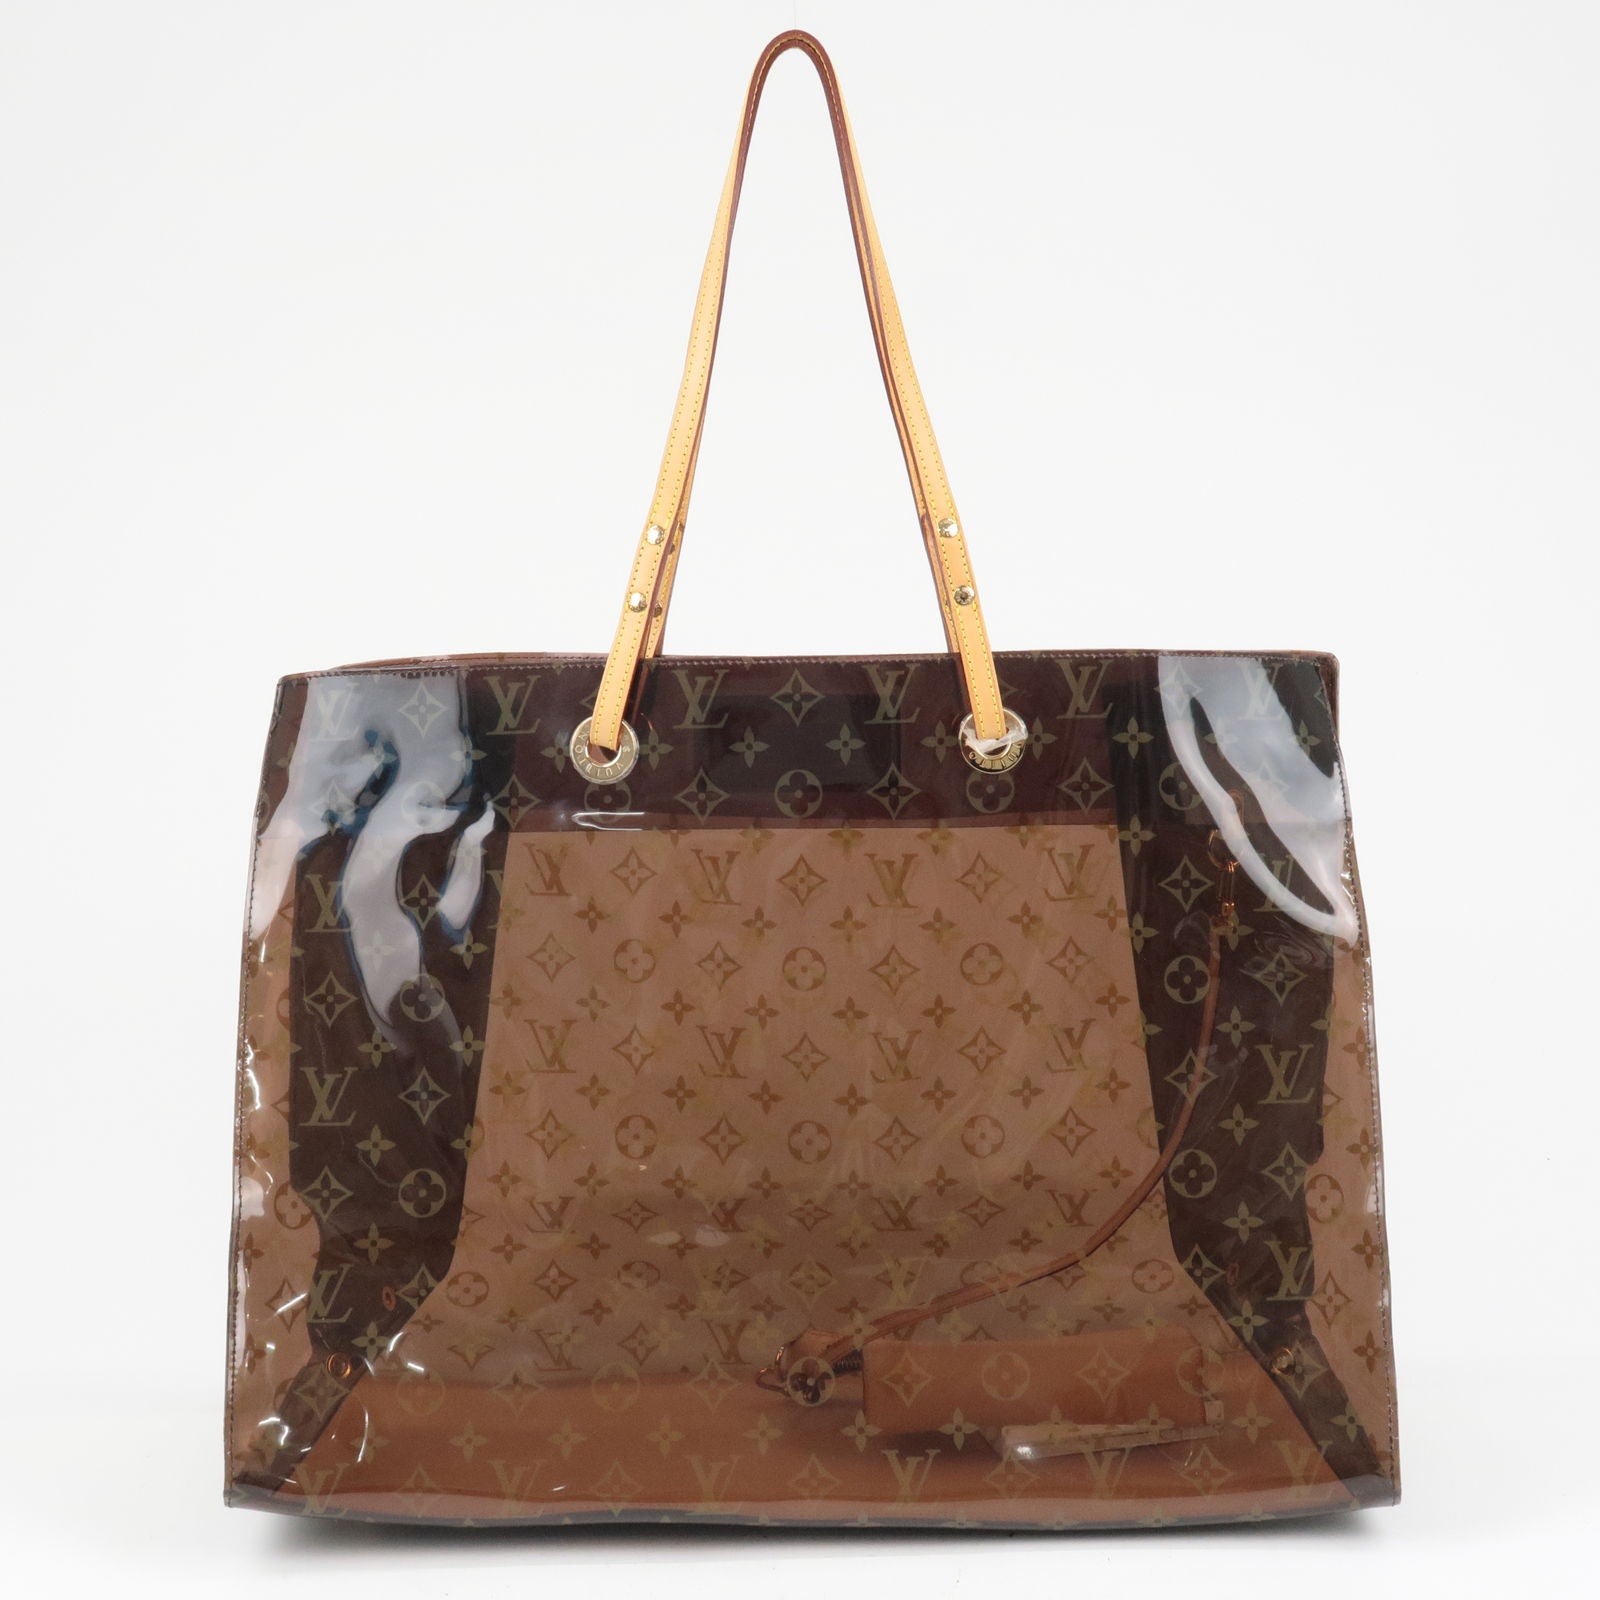 Vuitton - ep_vintage luxury Store - Tote - M50500 – dct - Cruise - Женская  сумка в стиле louis vuitton buci brown black - Louis - Cabas - Vinyl -  Monogram - B